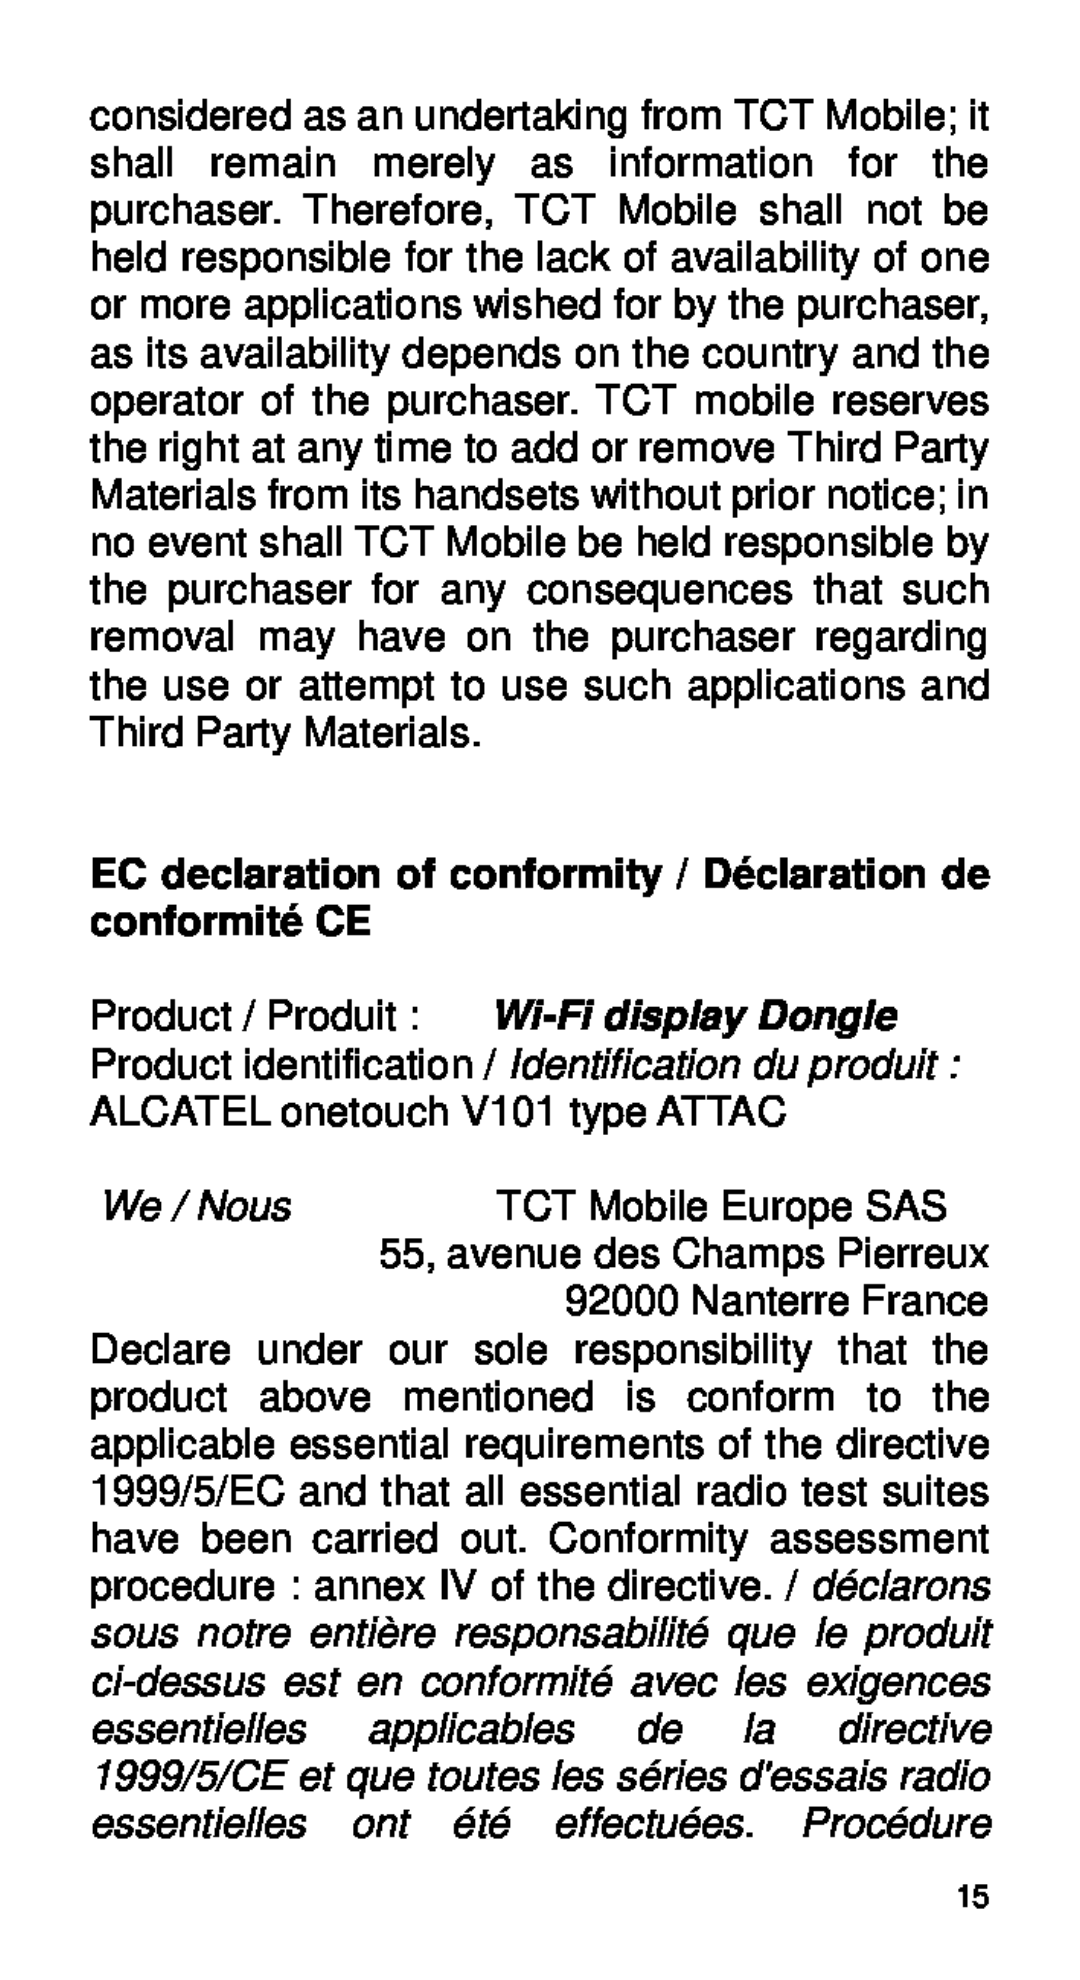 Alcatel Home V101 manual We / Nous, TCT Mobile Europe SAS, Nanterre France, 55, avenue des Champs Pierreux 